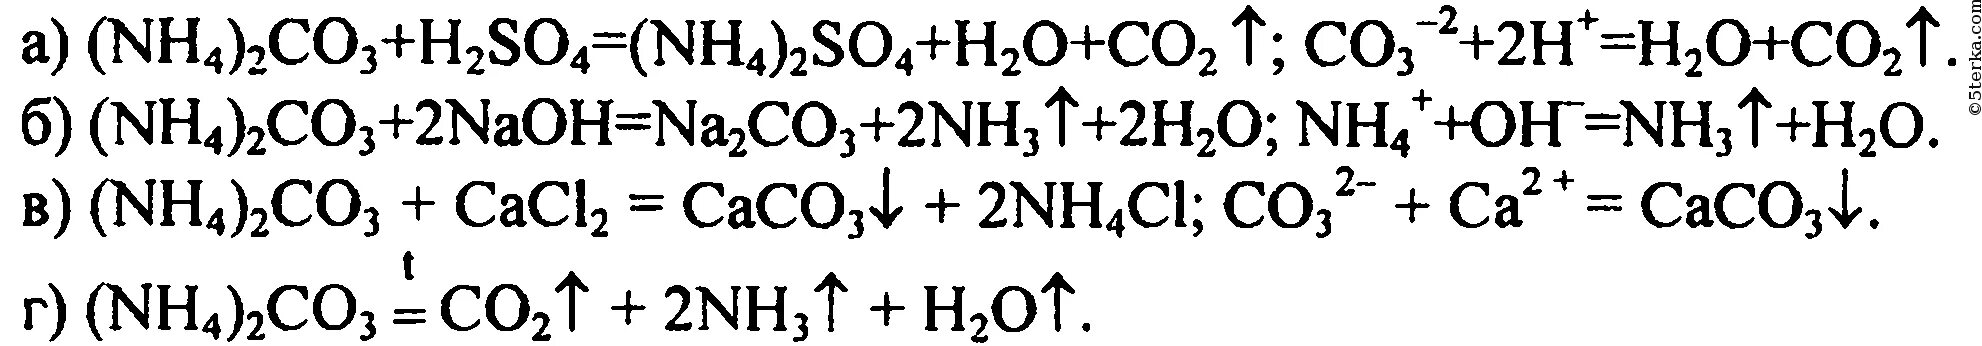 Карбонат аммония и серная кислота реакция